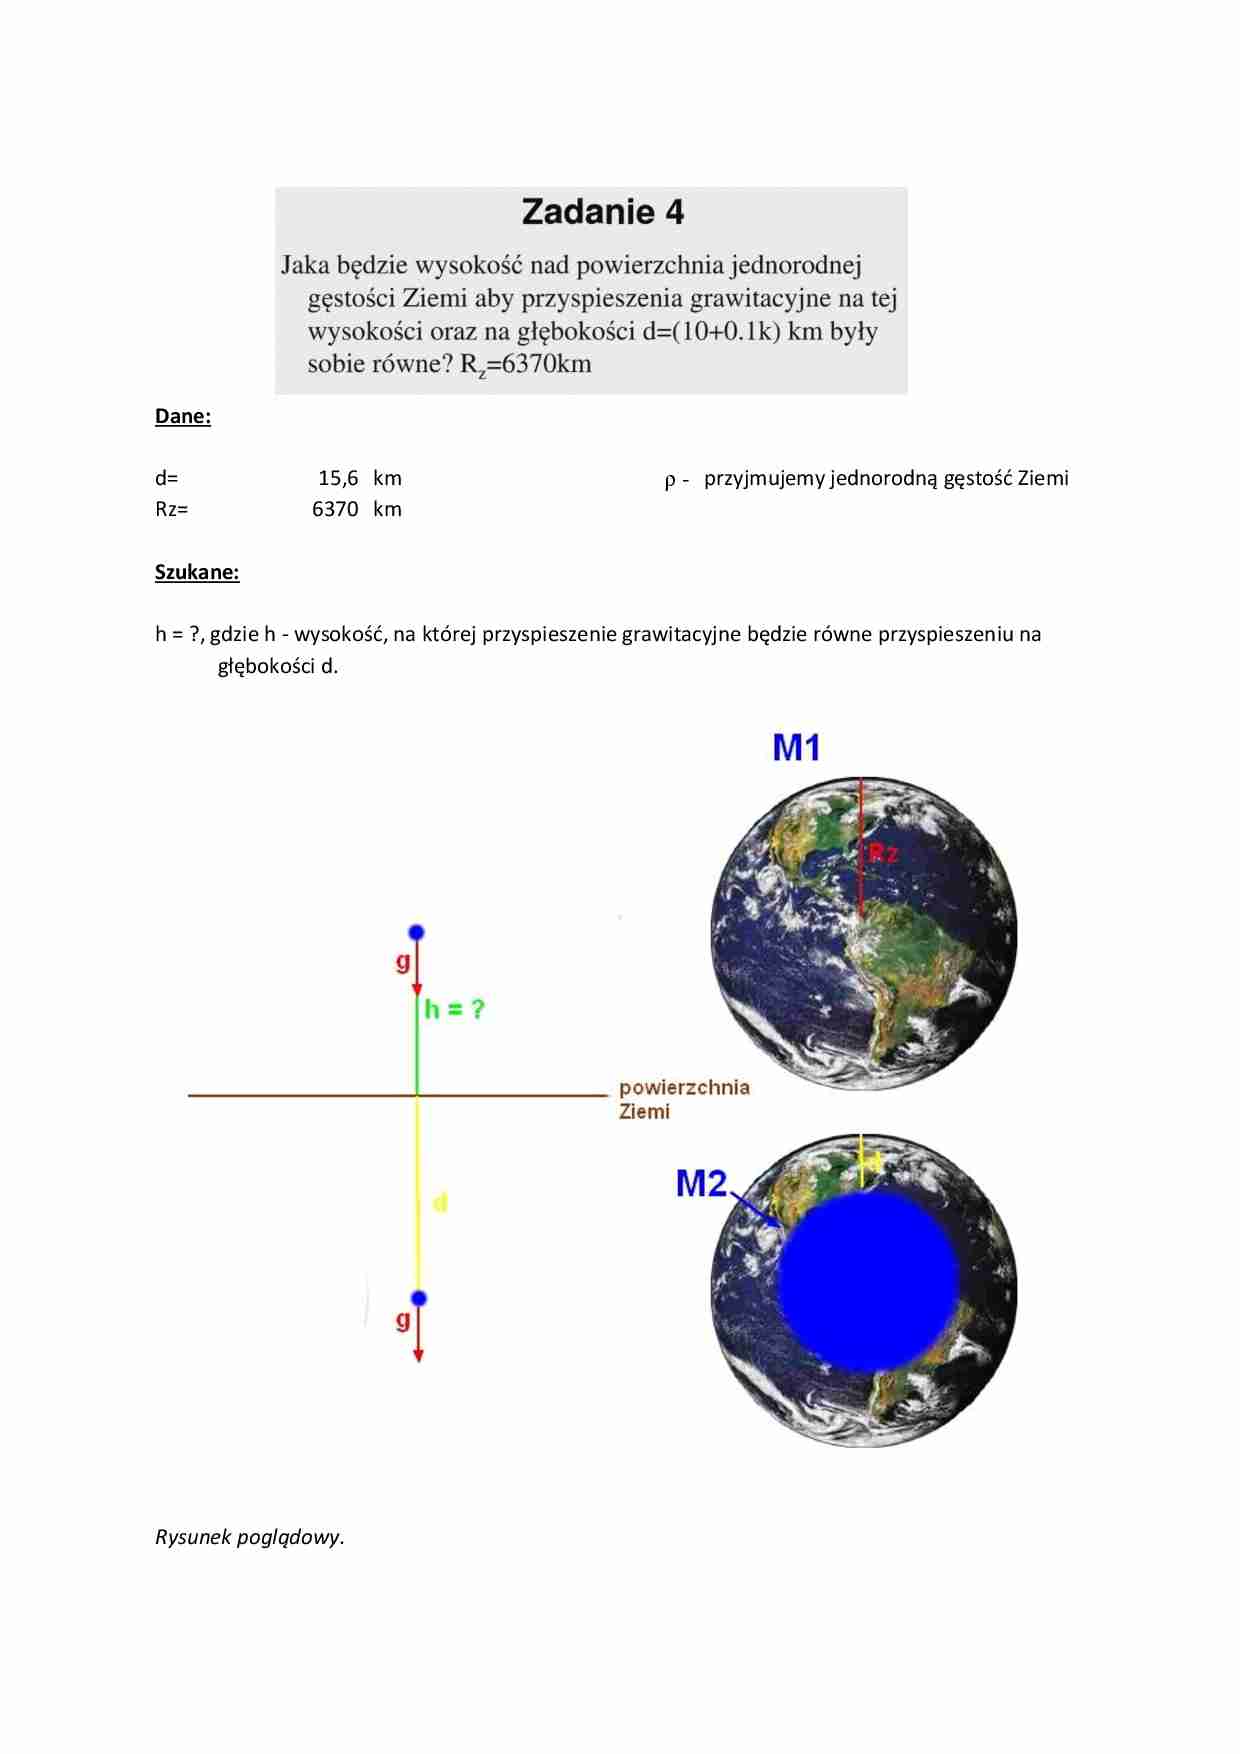 Geodezja fizyczna i grawimetria geodezyjna- zadanie 4 - strona 1